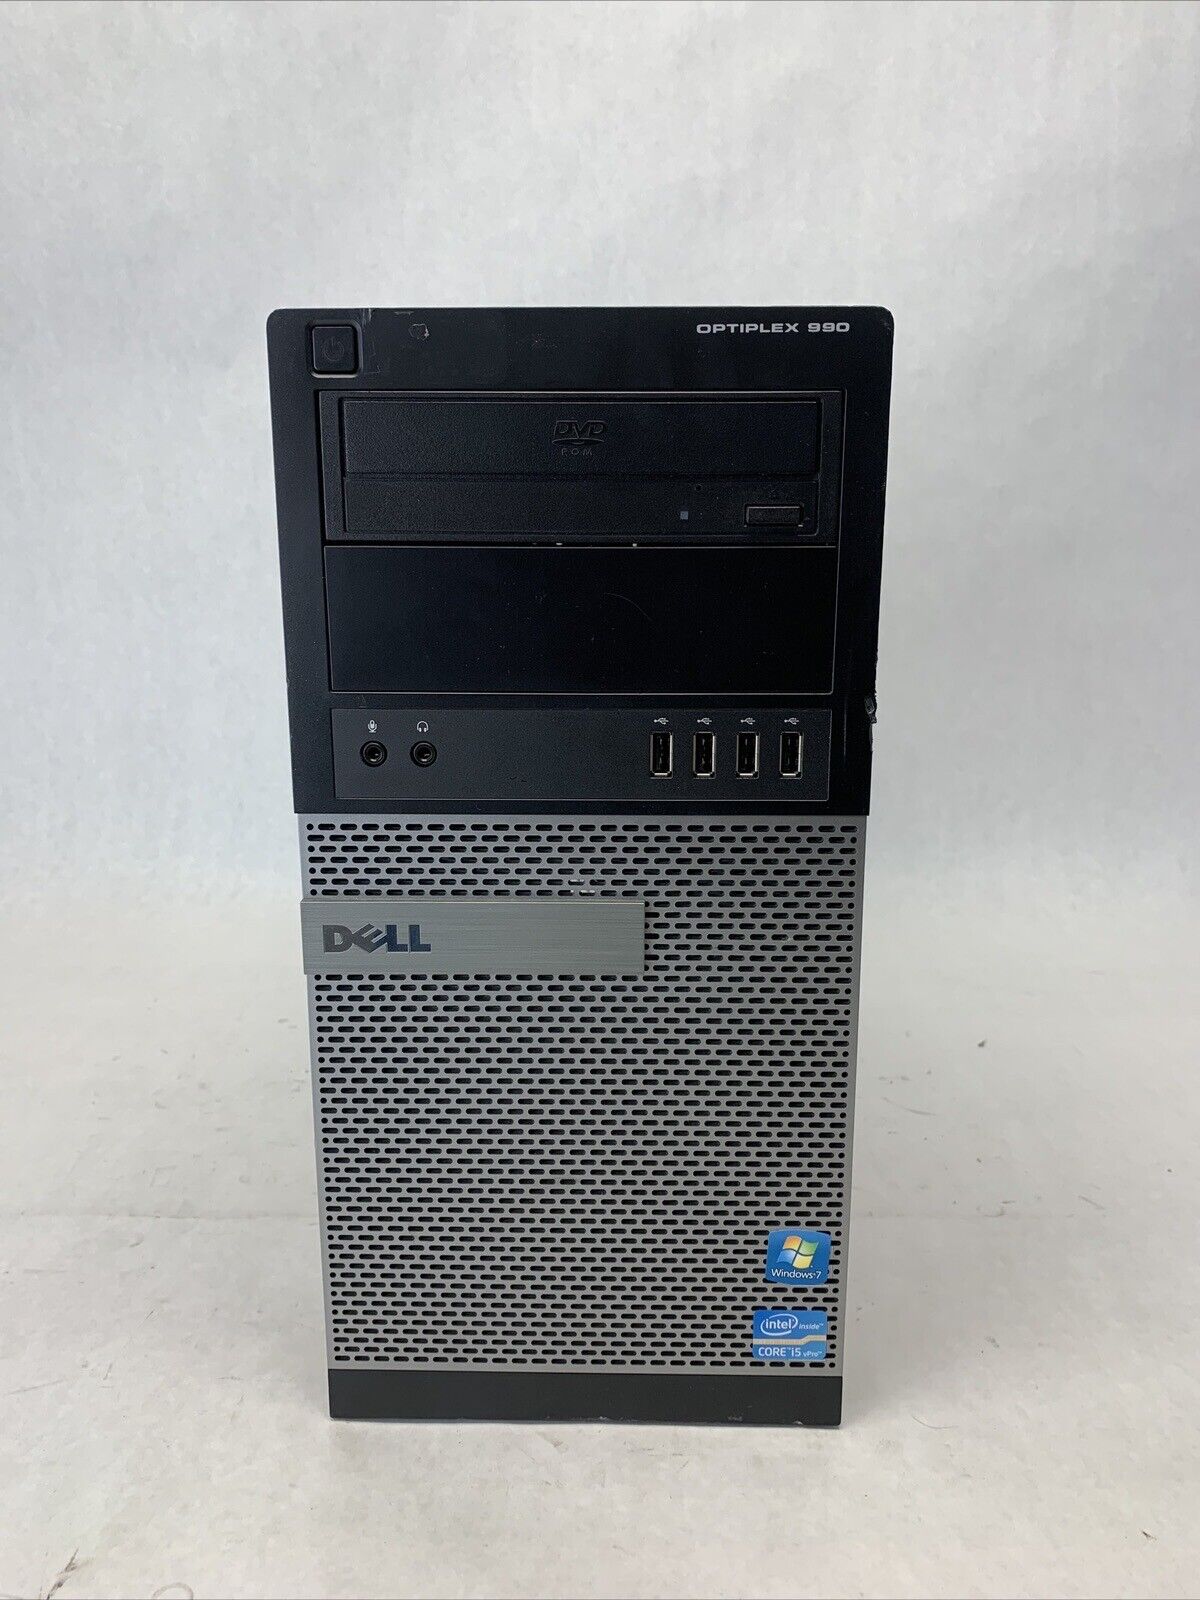 Dell Optiplex 990 MT Intel Core i5-2400 3.1GHz 4GB RAM No HDD No OS